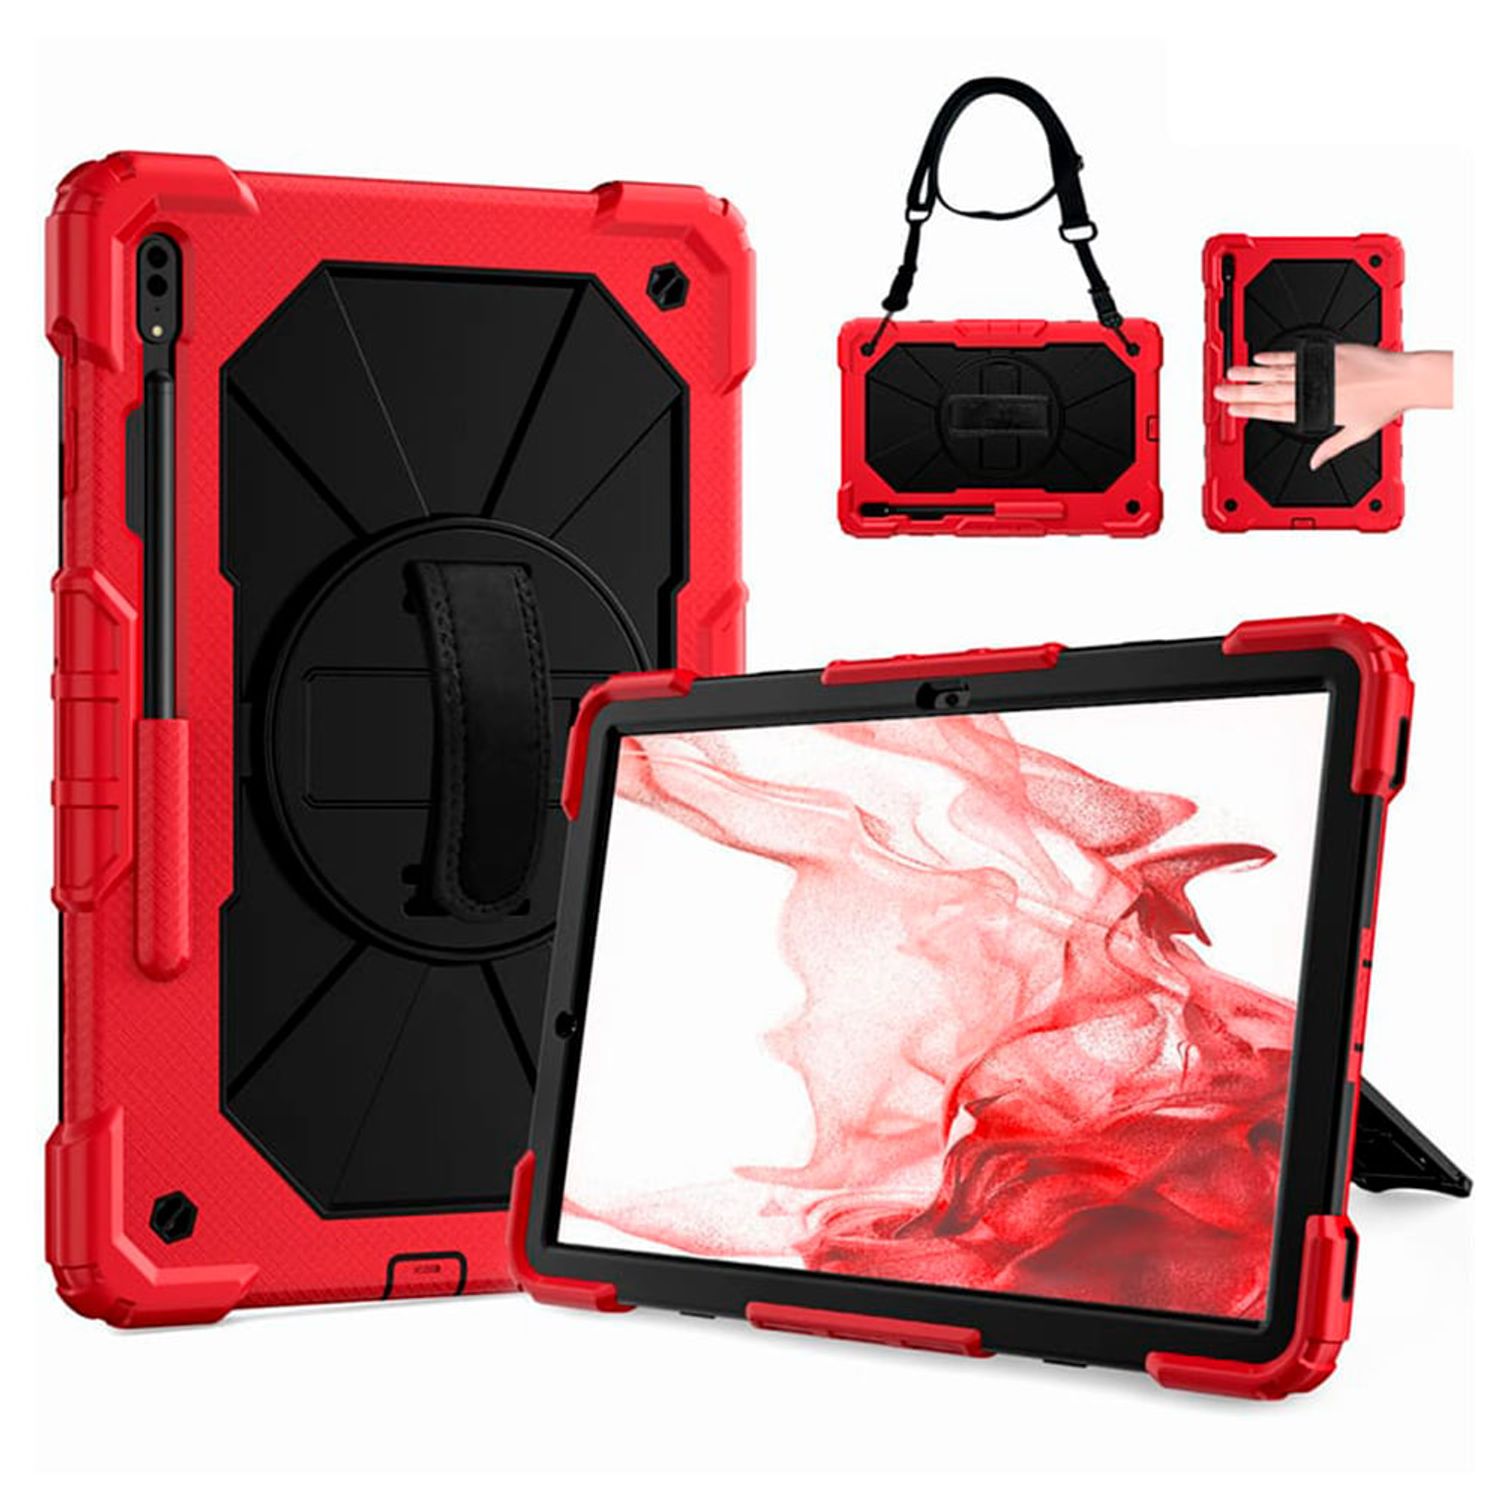 menta sin embargo 945 Funda para iPad 2 Armor Extreme Rojo Antishock Resistente Resistente a  Caidas y Golpes I Oechsle - Oechsle